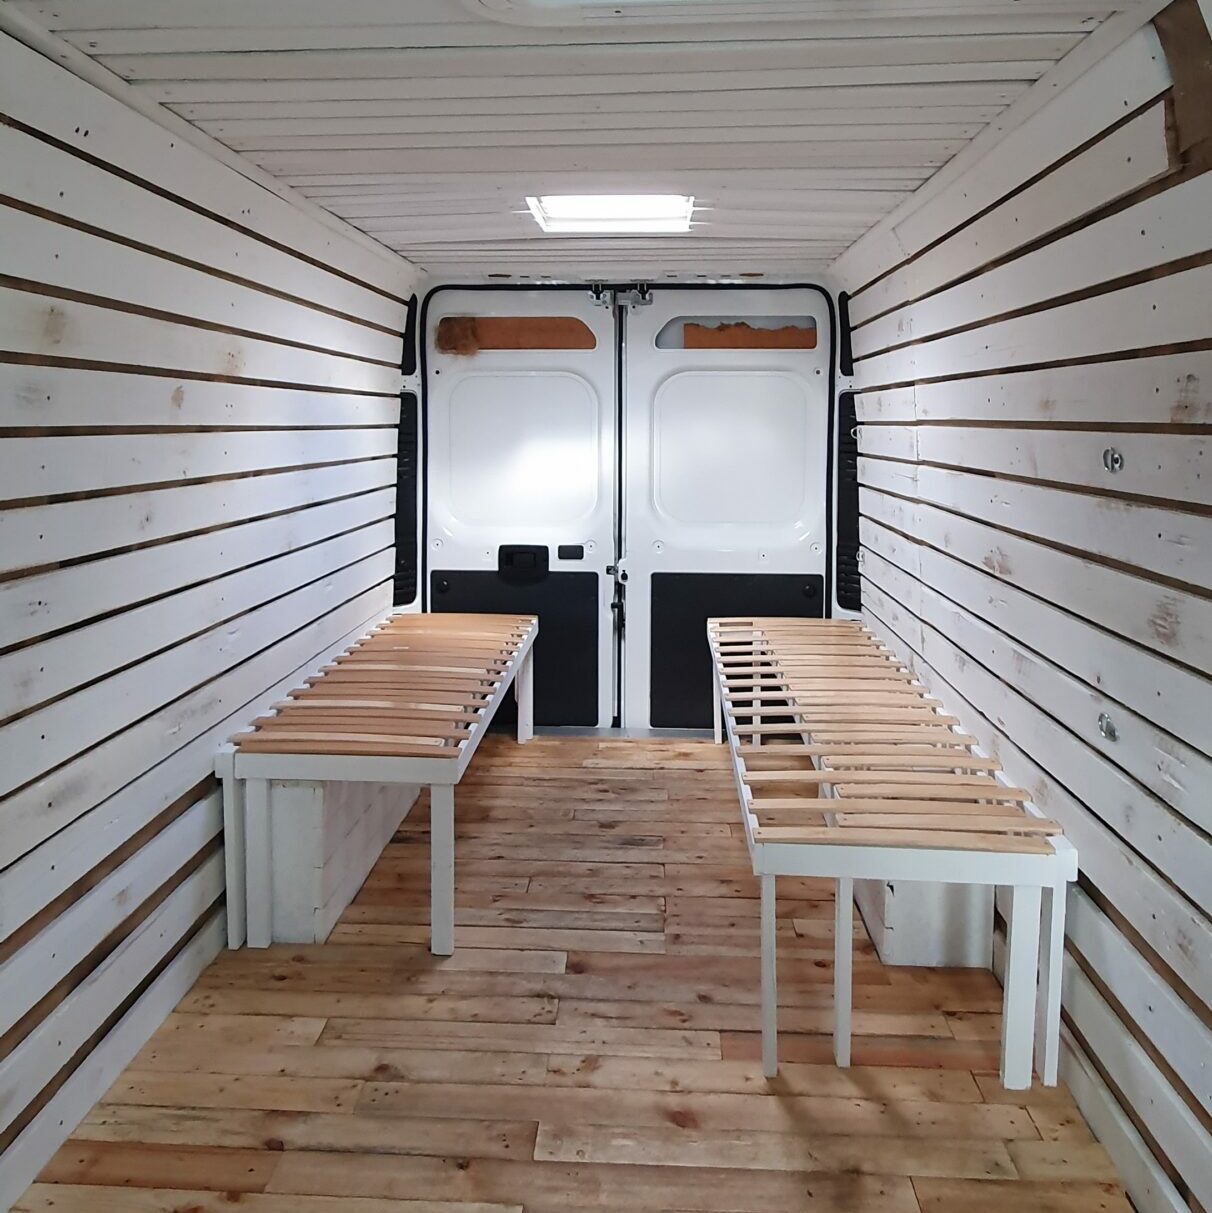 Umbau Van zu Wohnmobil altes Holz Wand und Decke